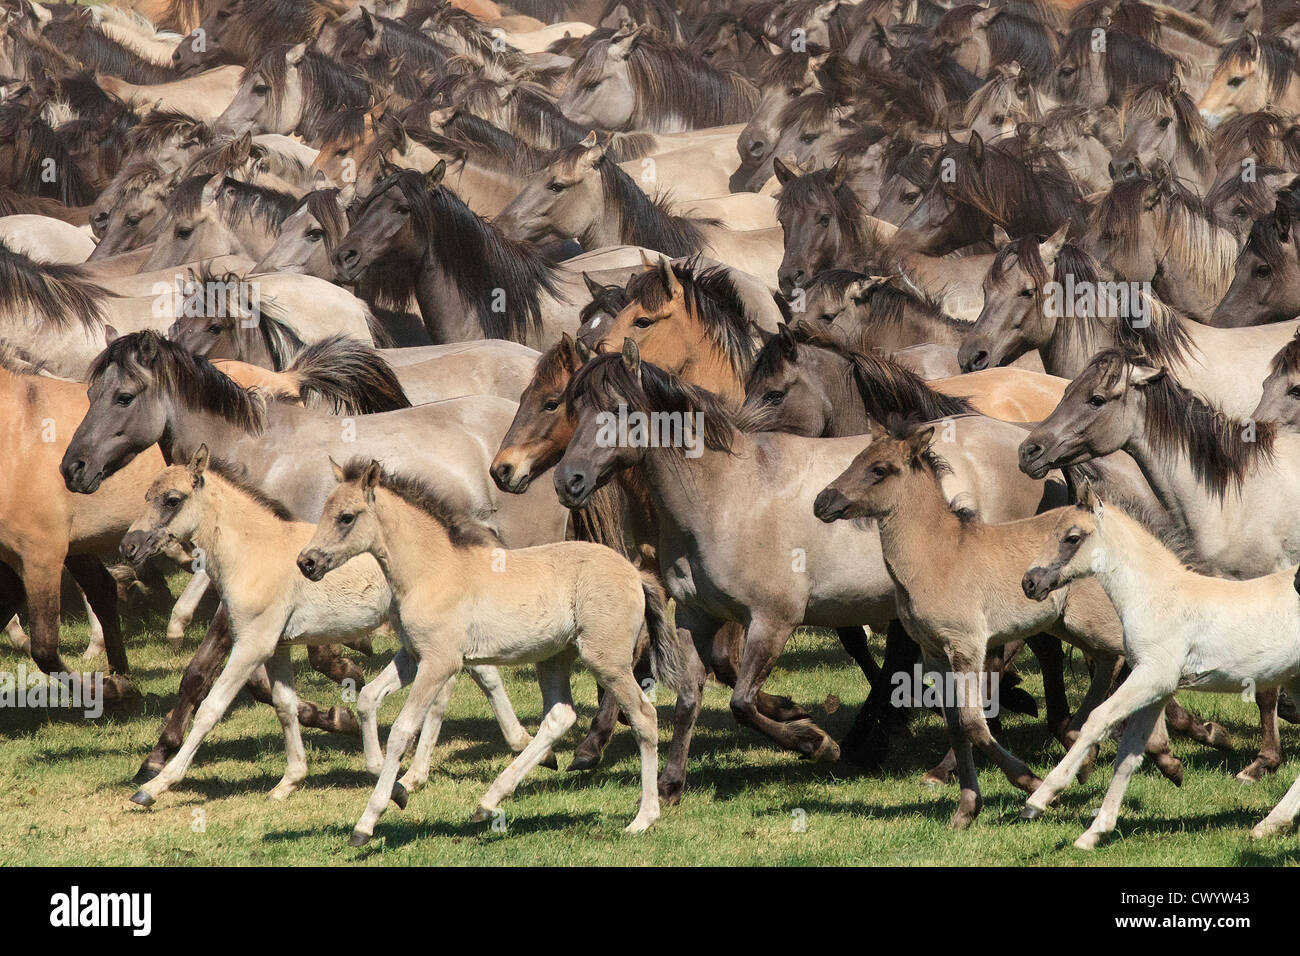 La capture de chevaux sauvages, de Duelmen, Allemagne Banque D'Images